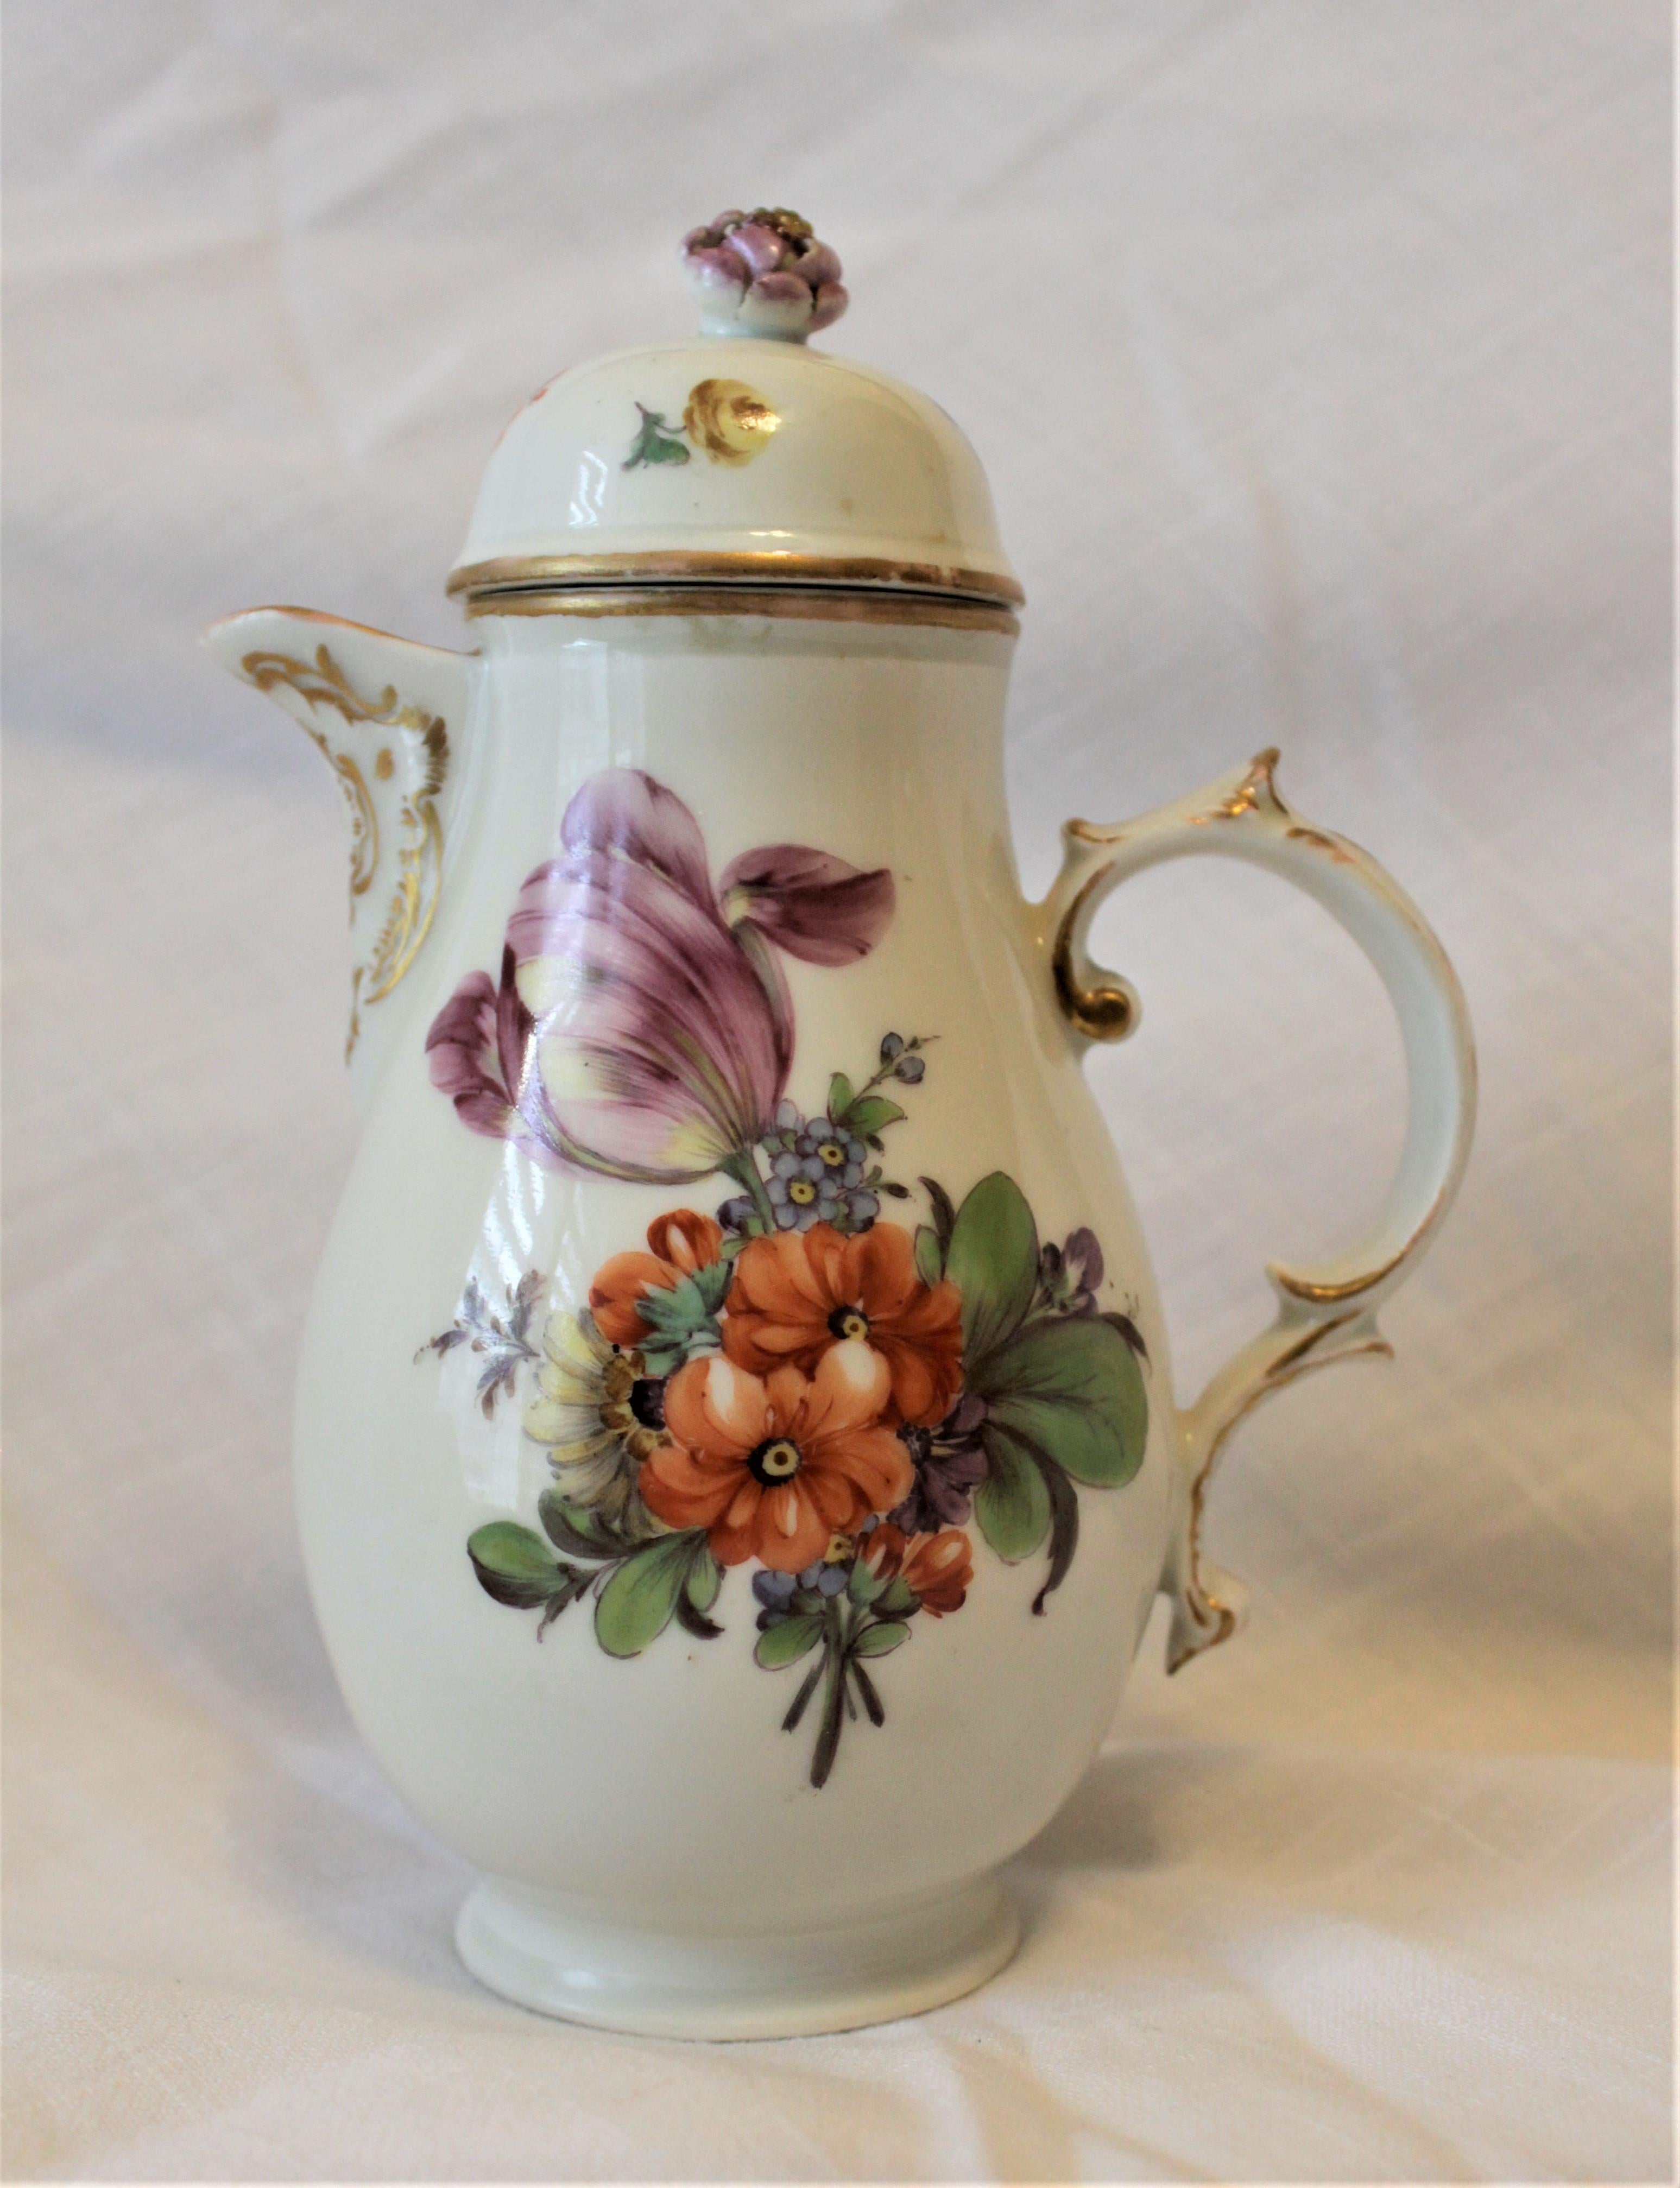 Cette ancienne cafetière en porcelaine allemande a été fabriquée par la manufacture Furstenberg Works vers 1760 dans le style rococo. Cette cafetière est décorée de fleurs peintes à la main dans des couleurs vibrantes sur les côtés, avec des